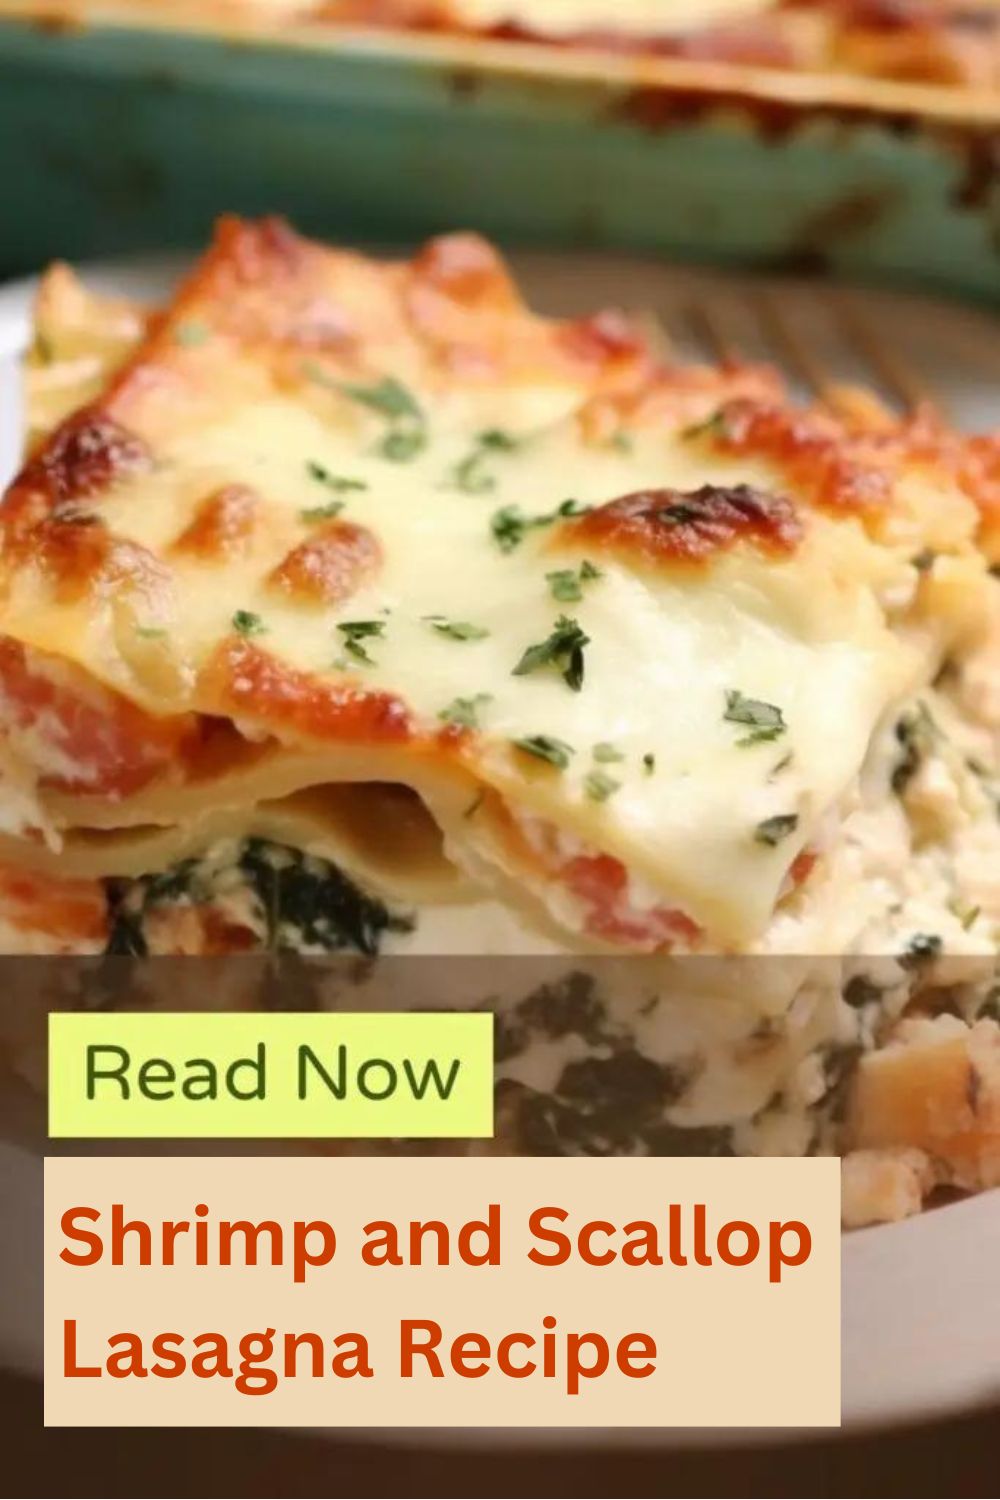 Shrimp and Scallop Lasagna Recipe